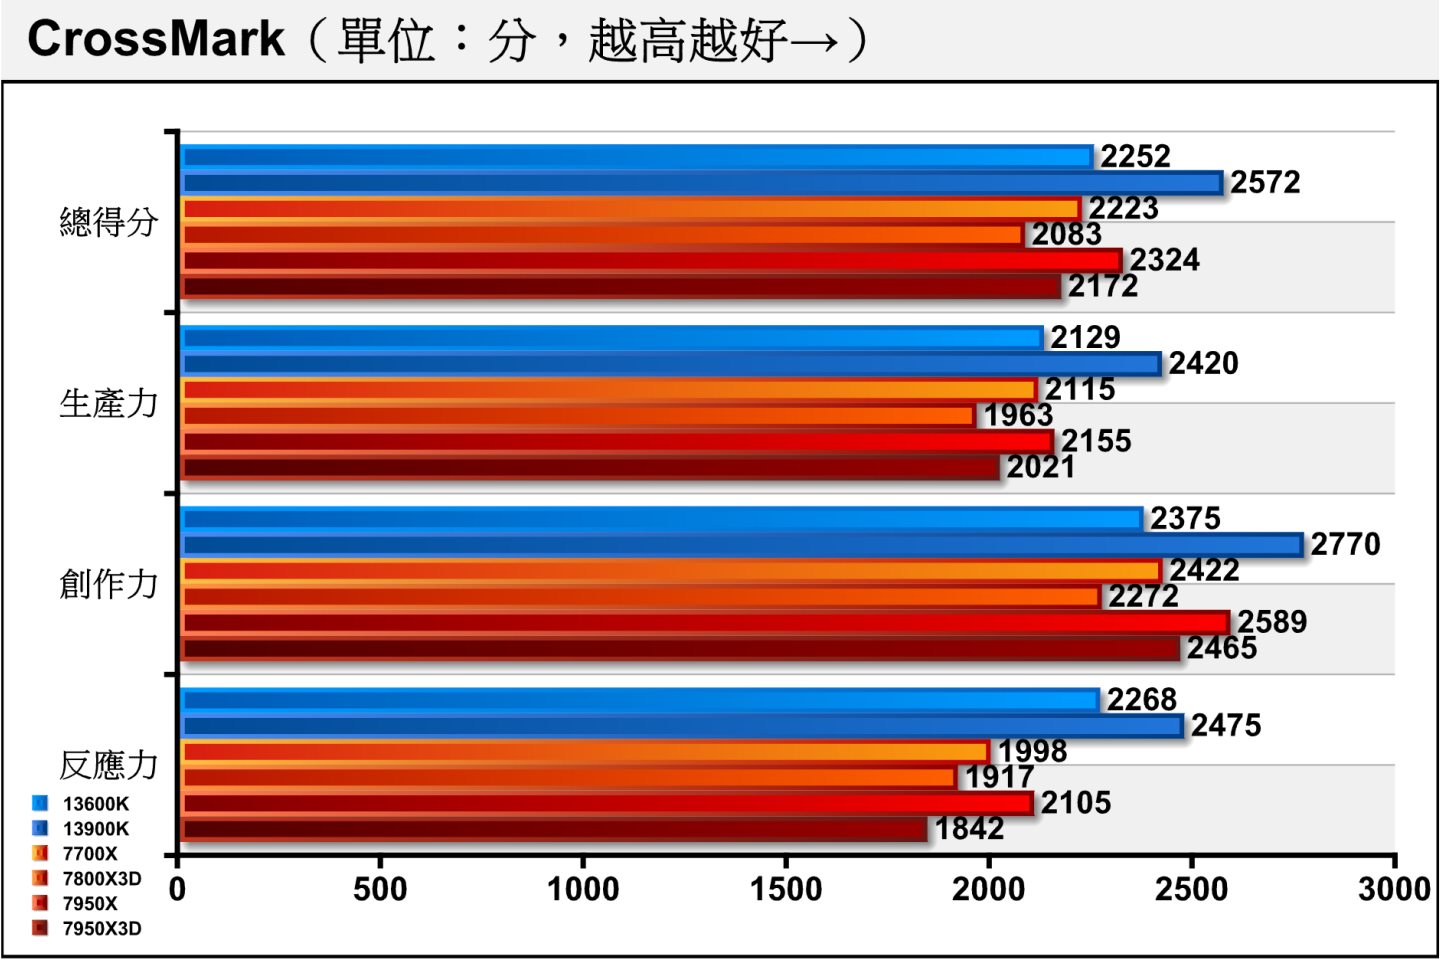 同為綜合效能測試的CrossMark，7800X3D的表現受到時脈較低的影響，而落後於7700X。